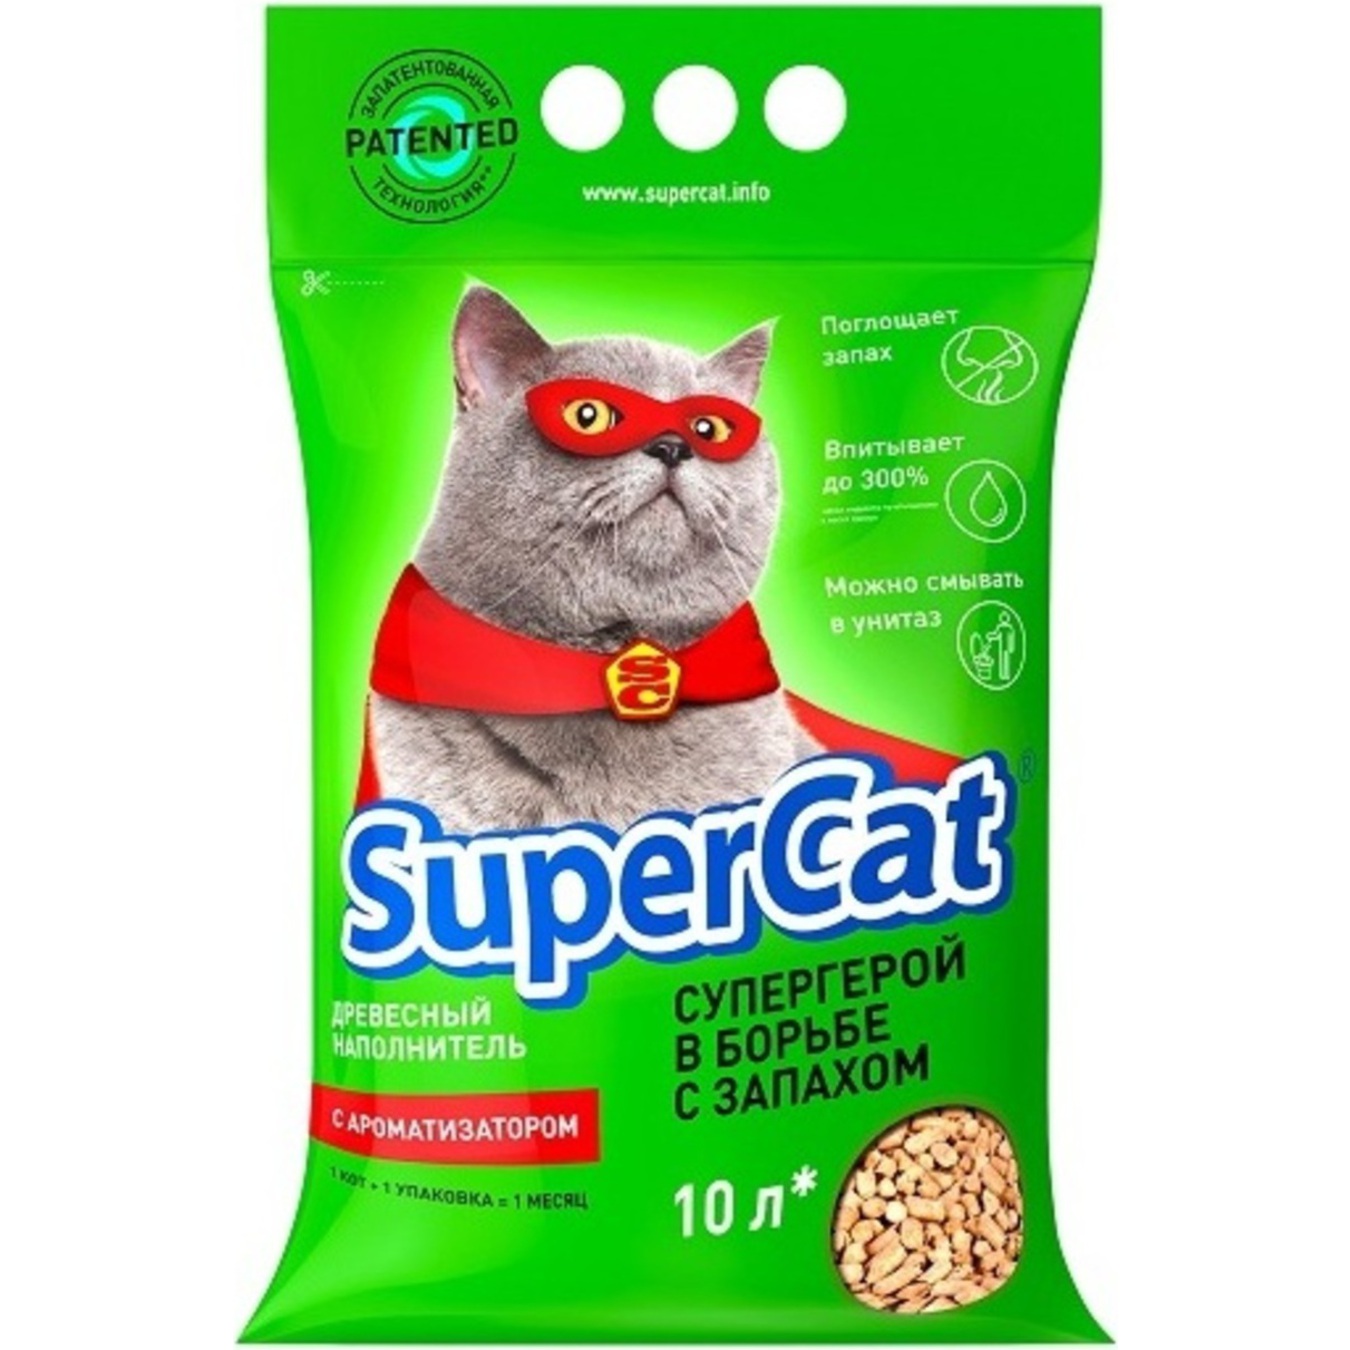 Наповнювач Super Cat деревний з ароматизатором для котячого туалету 3кг